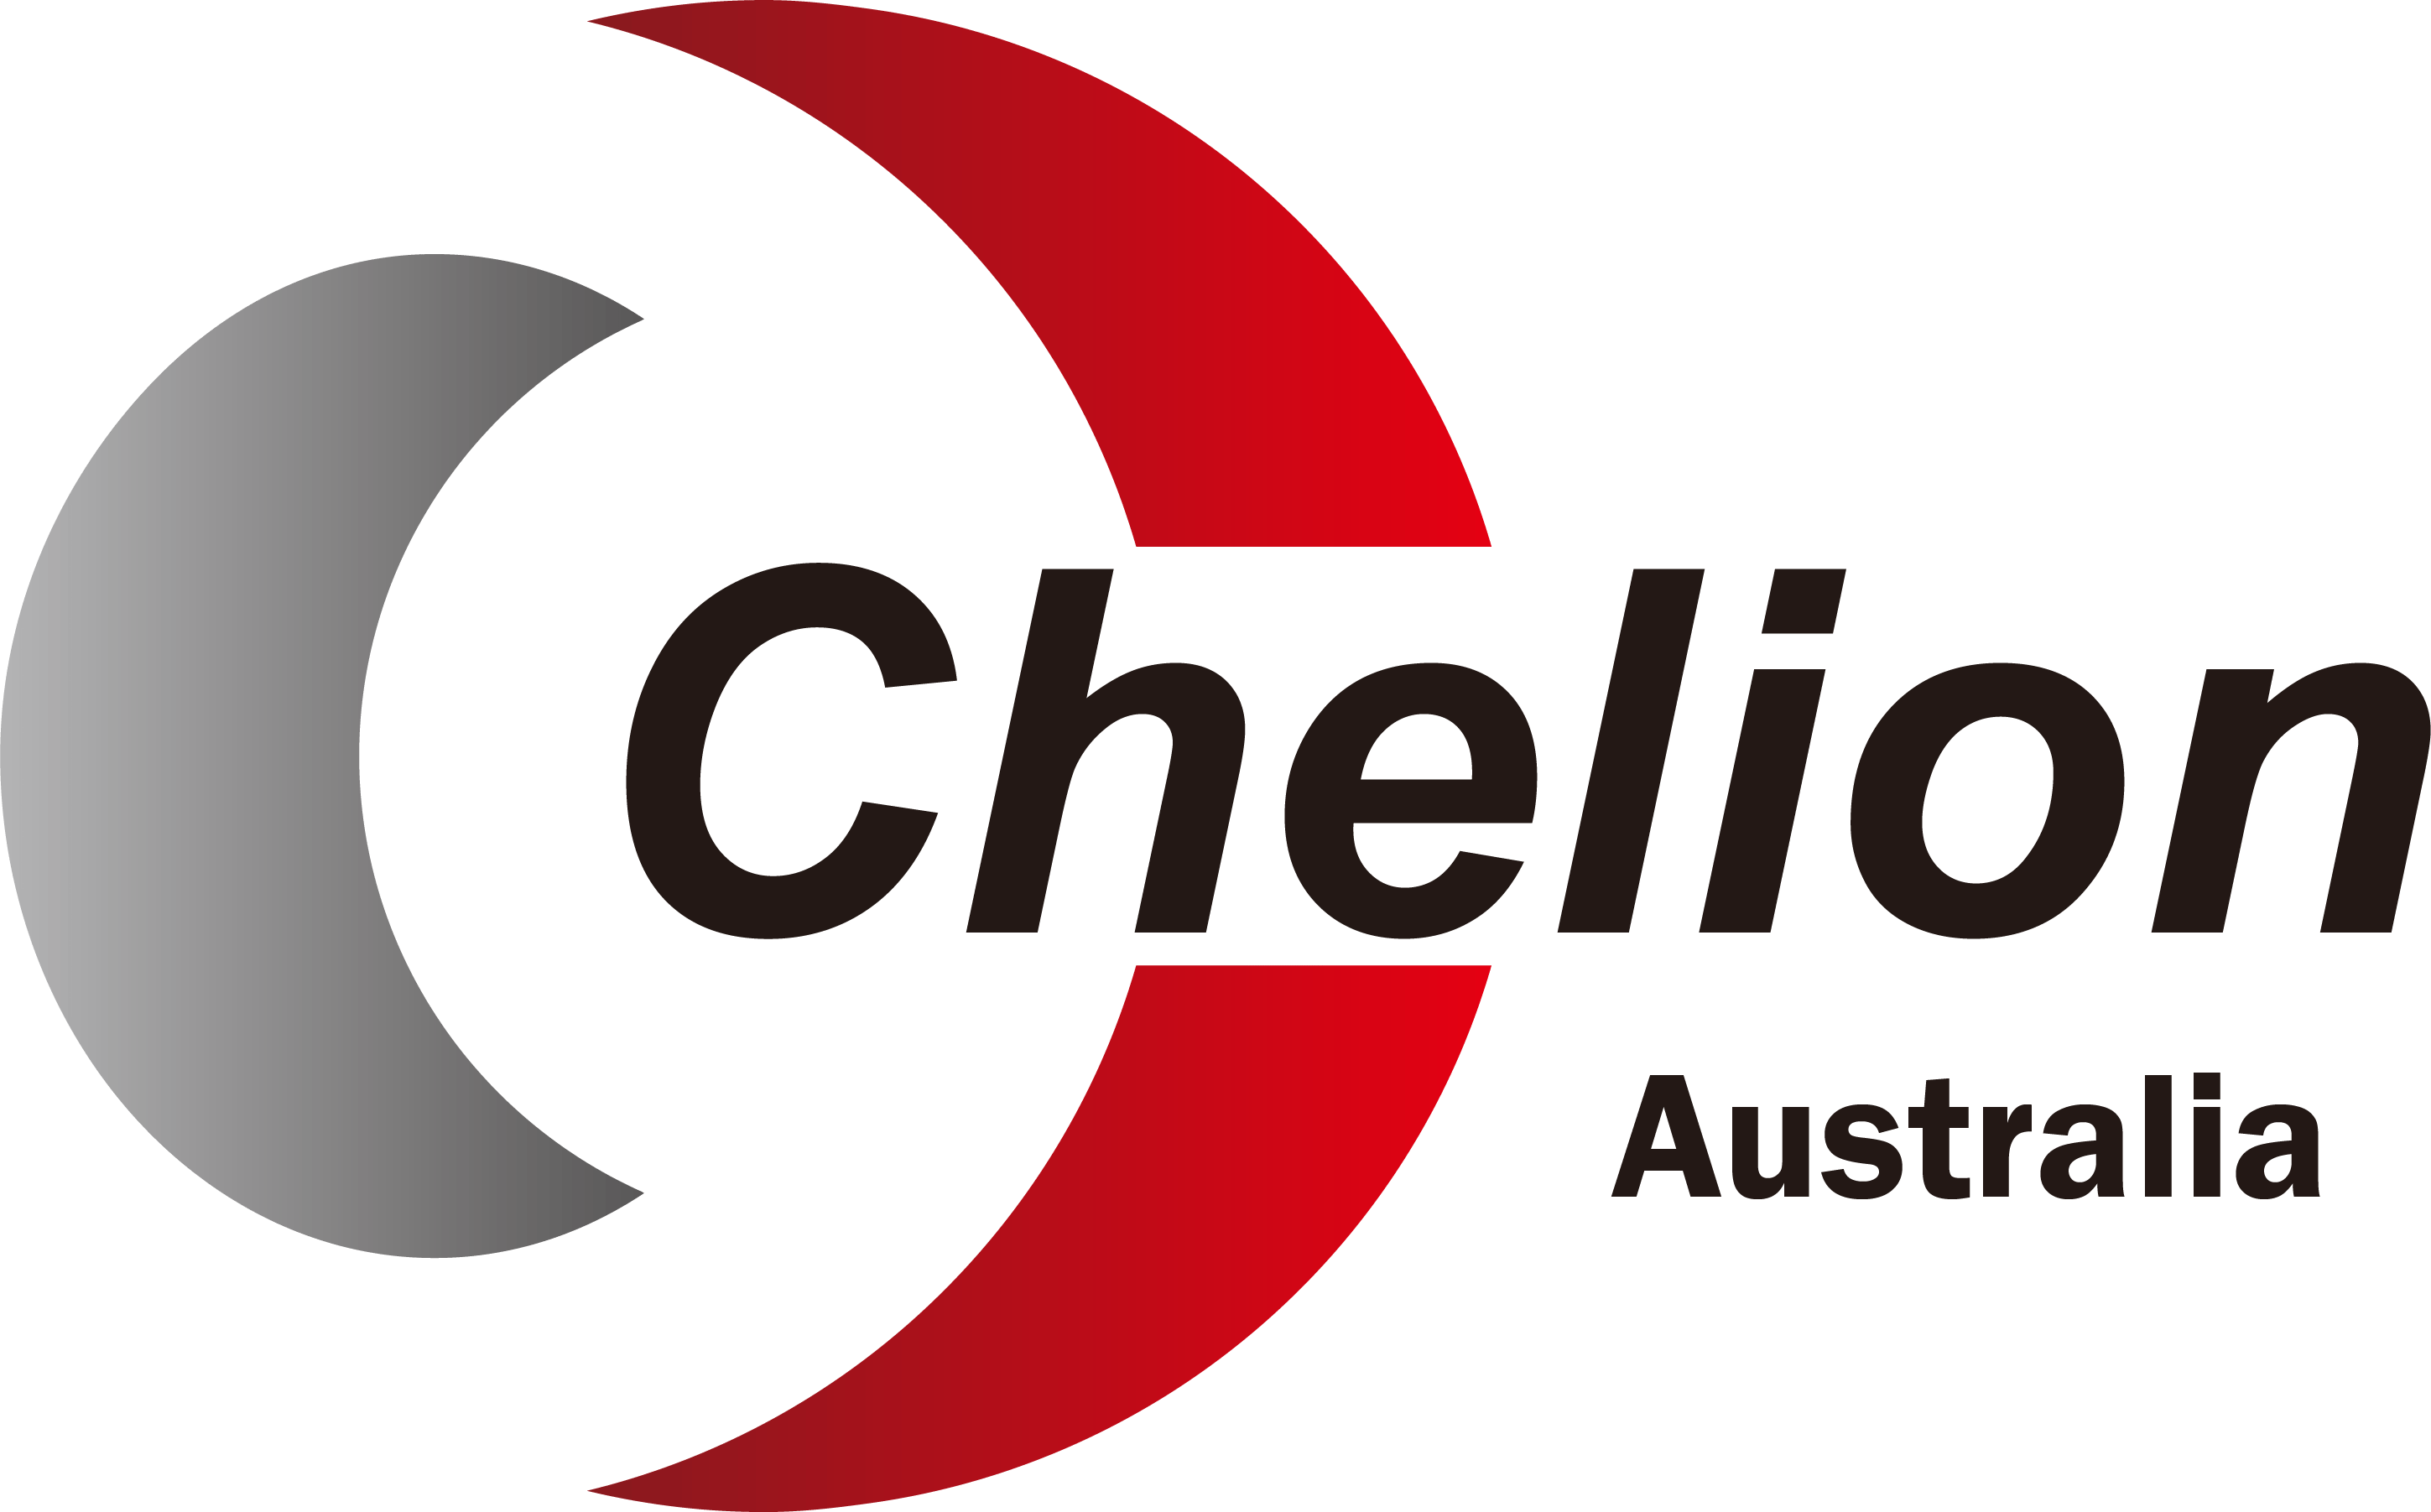 The Chelion Australia logo